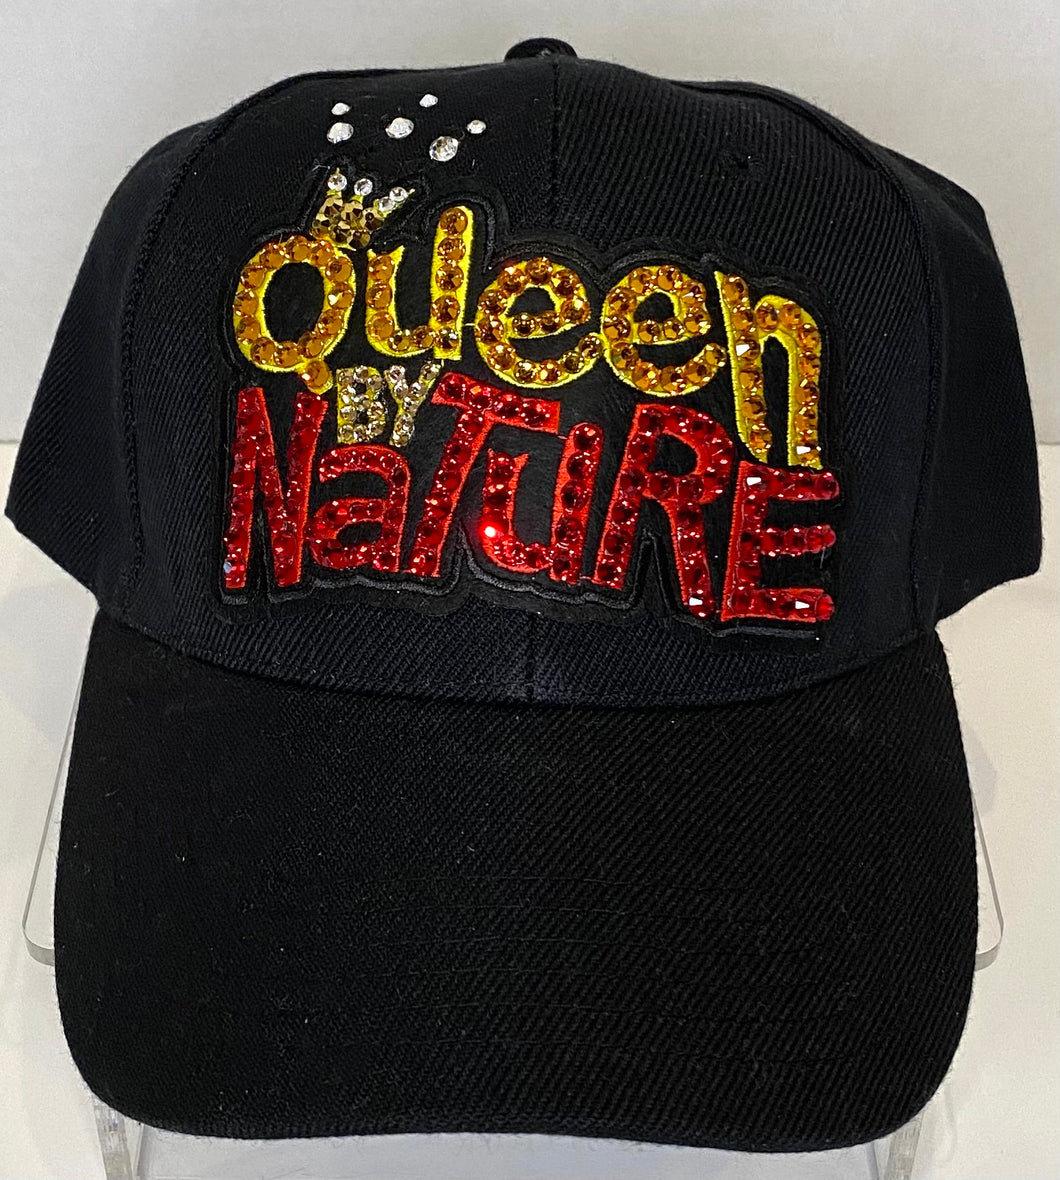 Bling Themed Cap - Queen